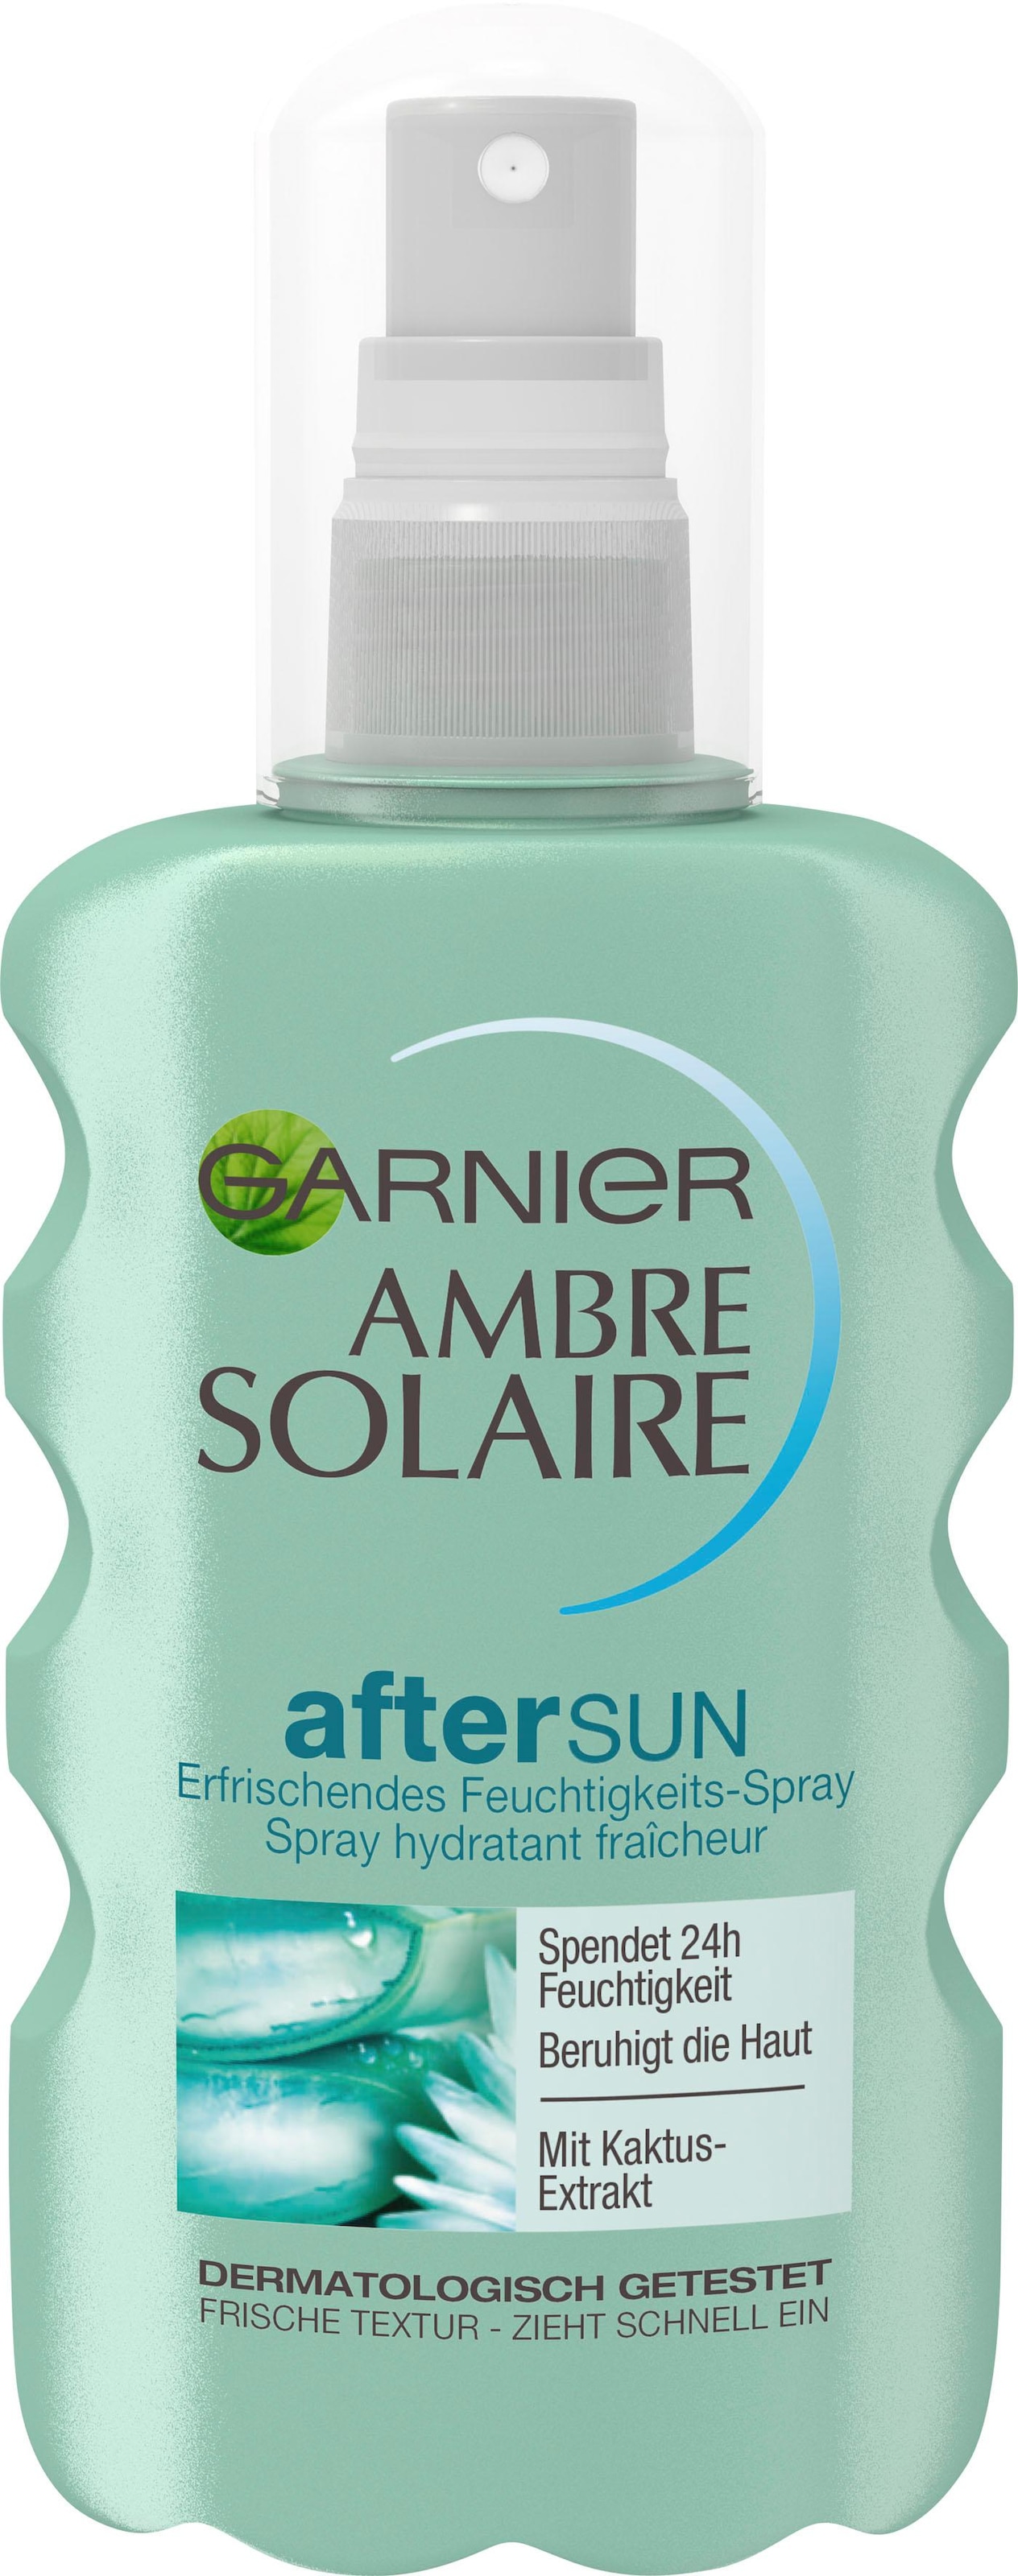 Feuchtigkeits-Après«, mit After »Ambre Kaktus-Extrakt GARNIER Sun-Spray bei Solaire